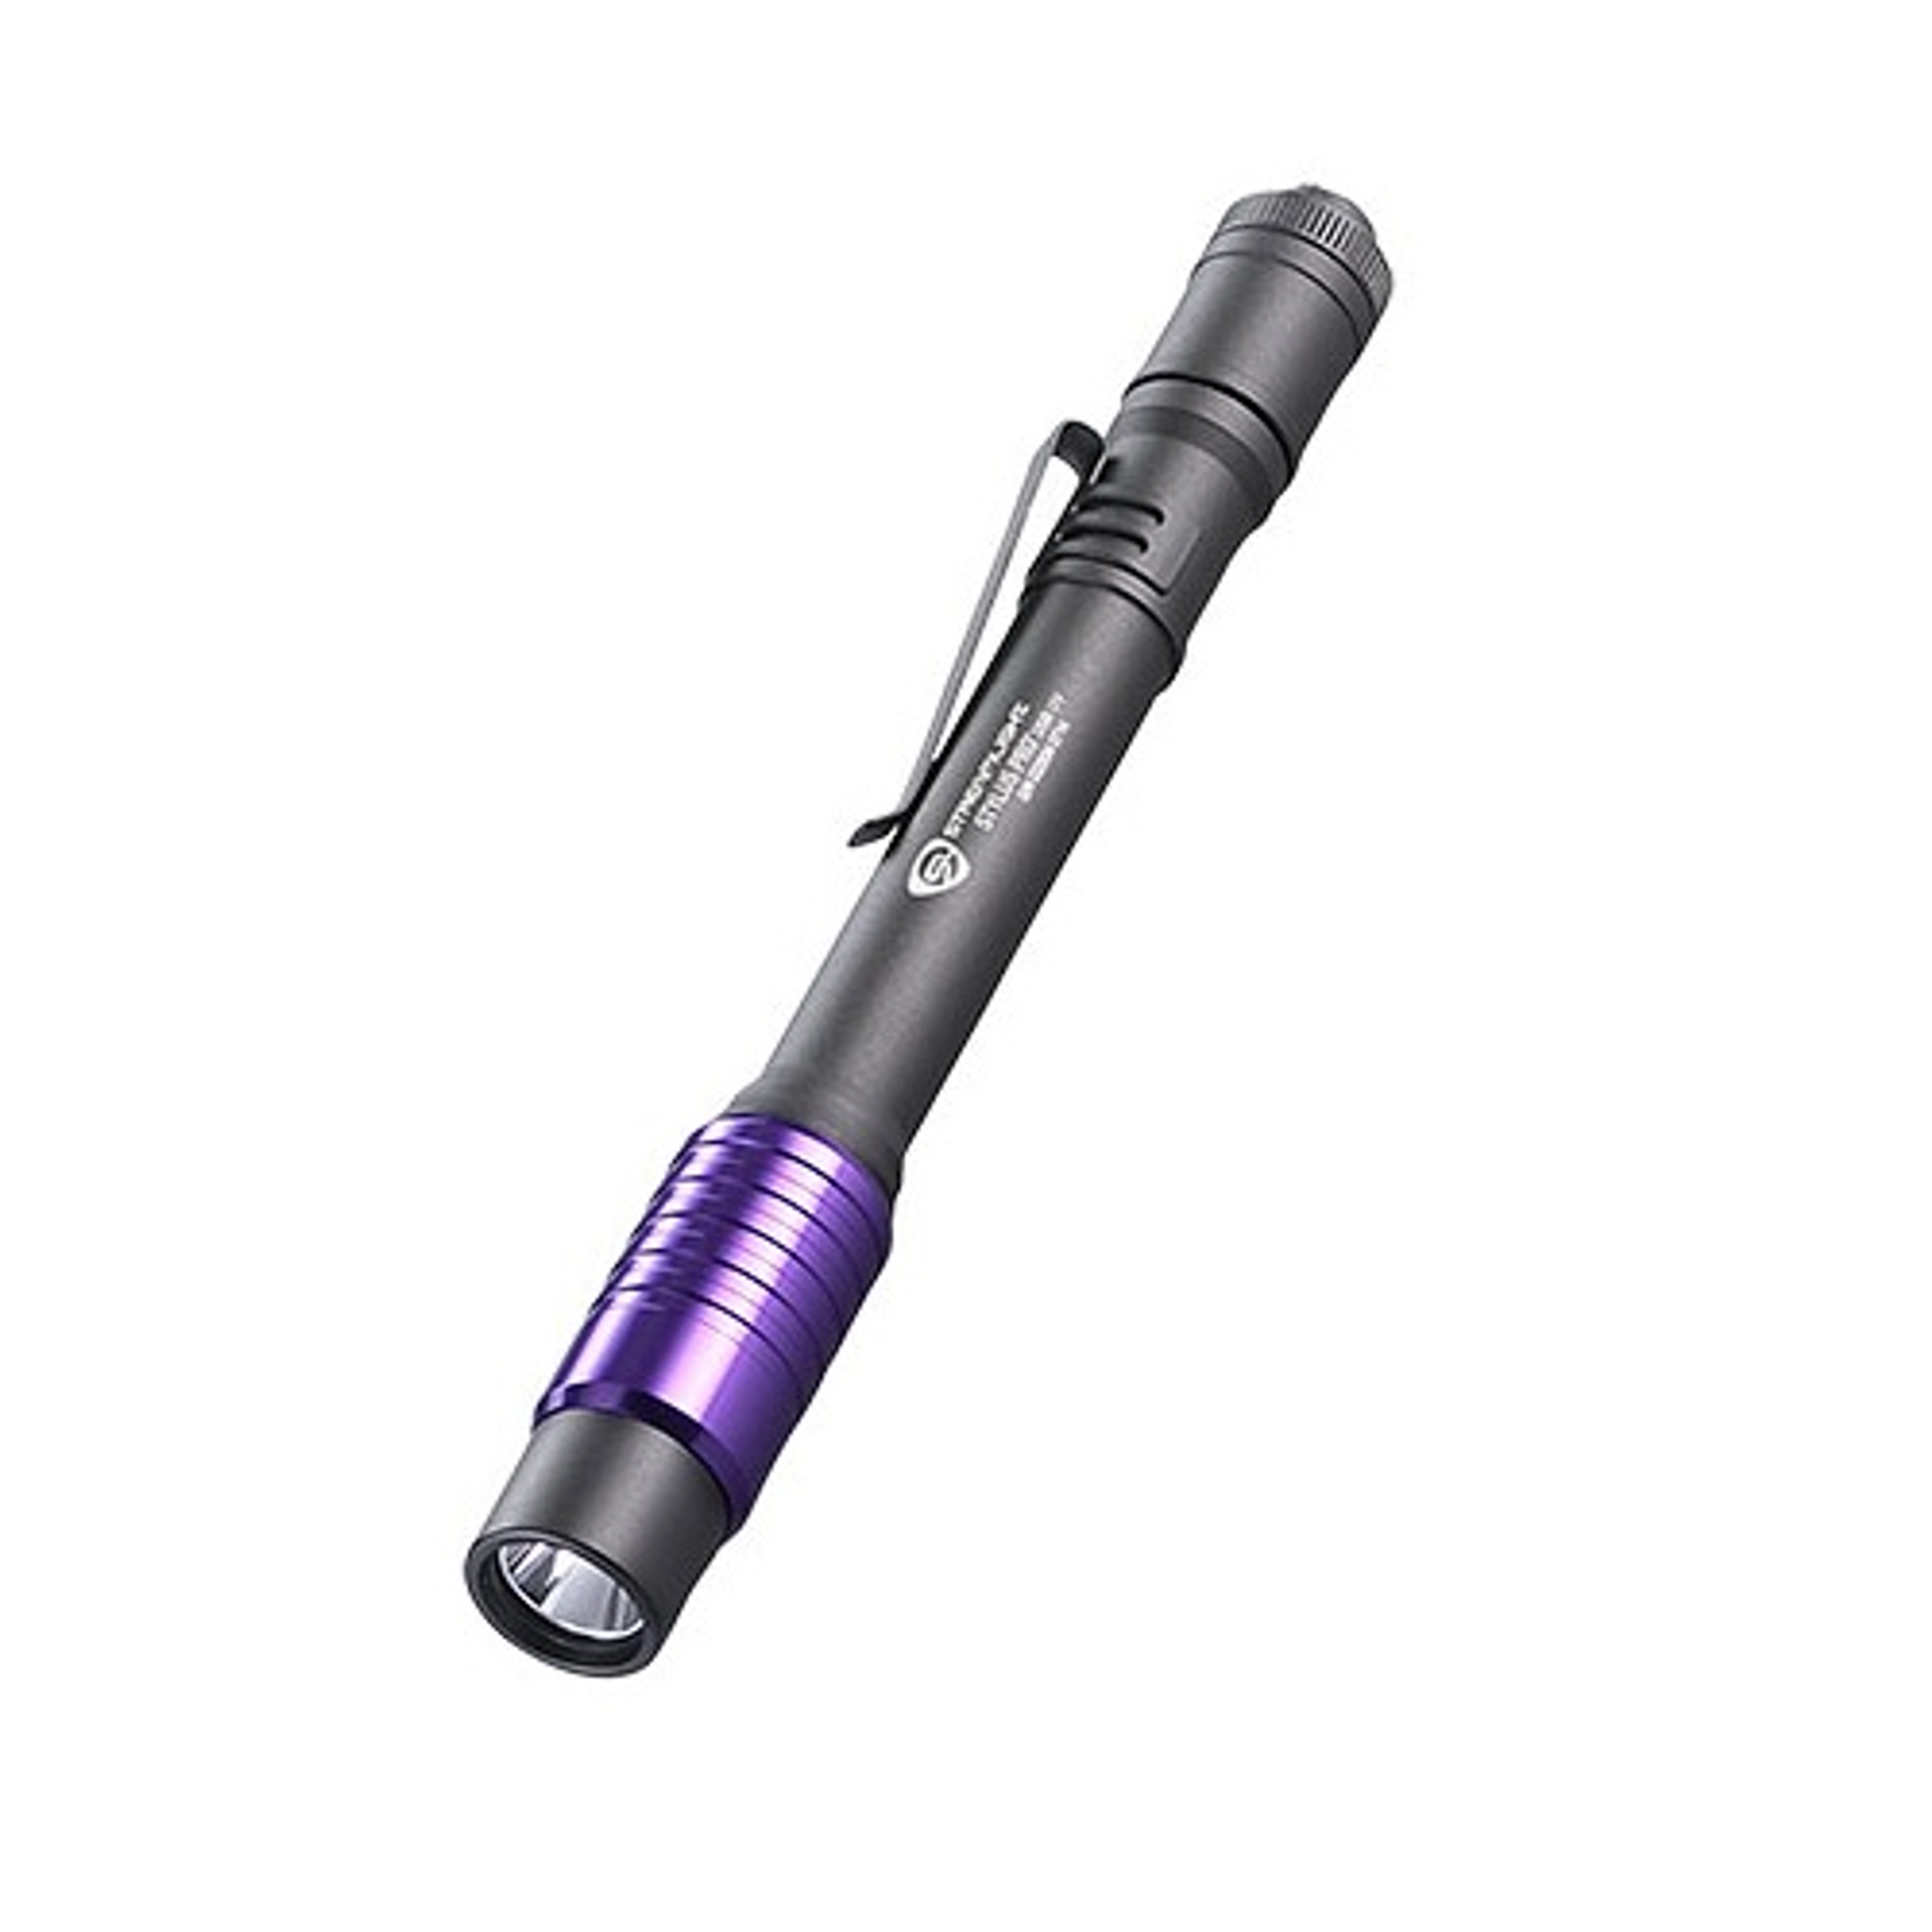 Stylus Pro Usb Rechargeable Penlight - KR66149